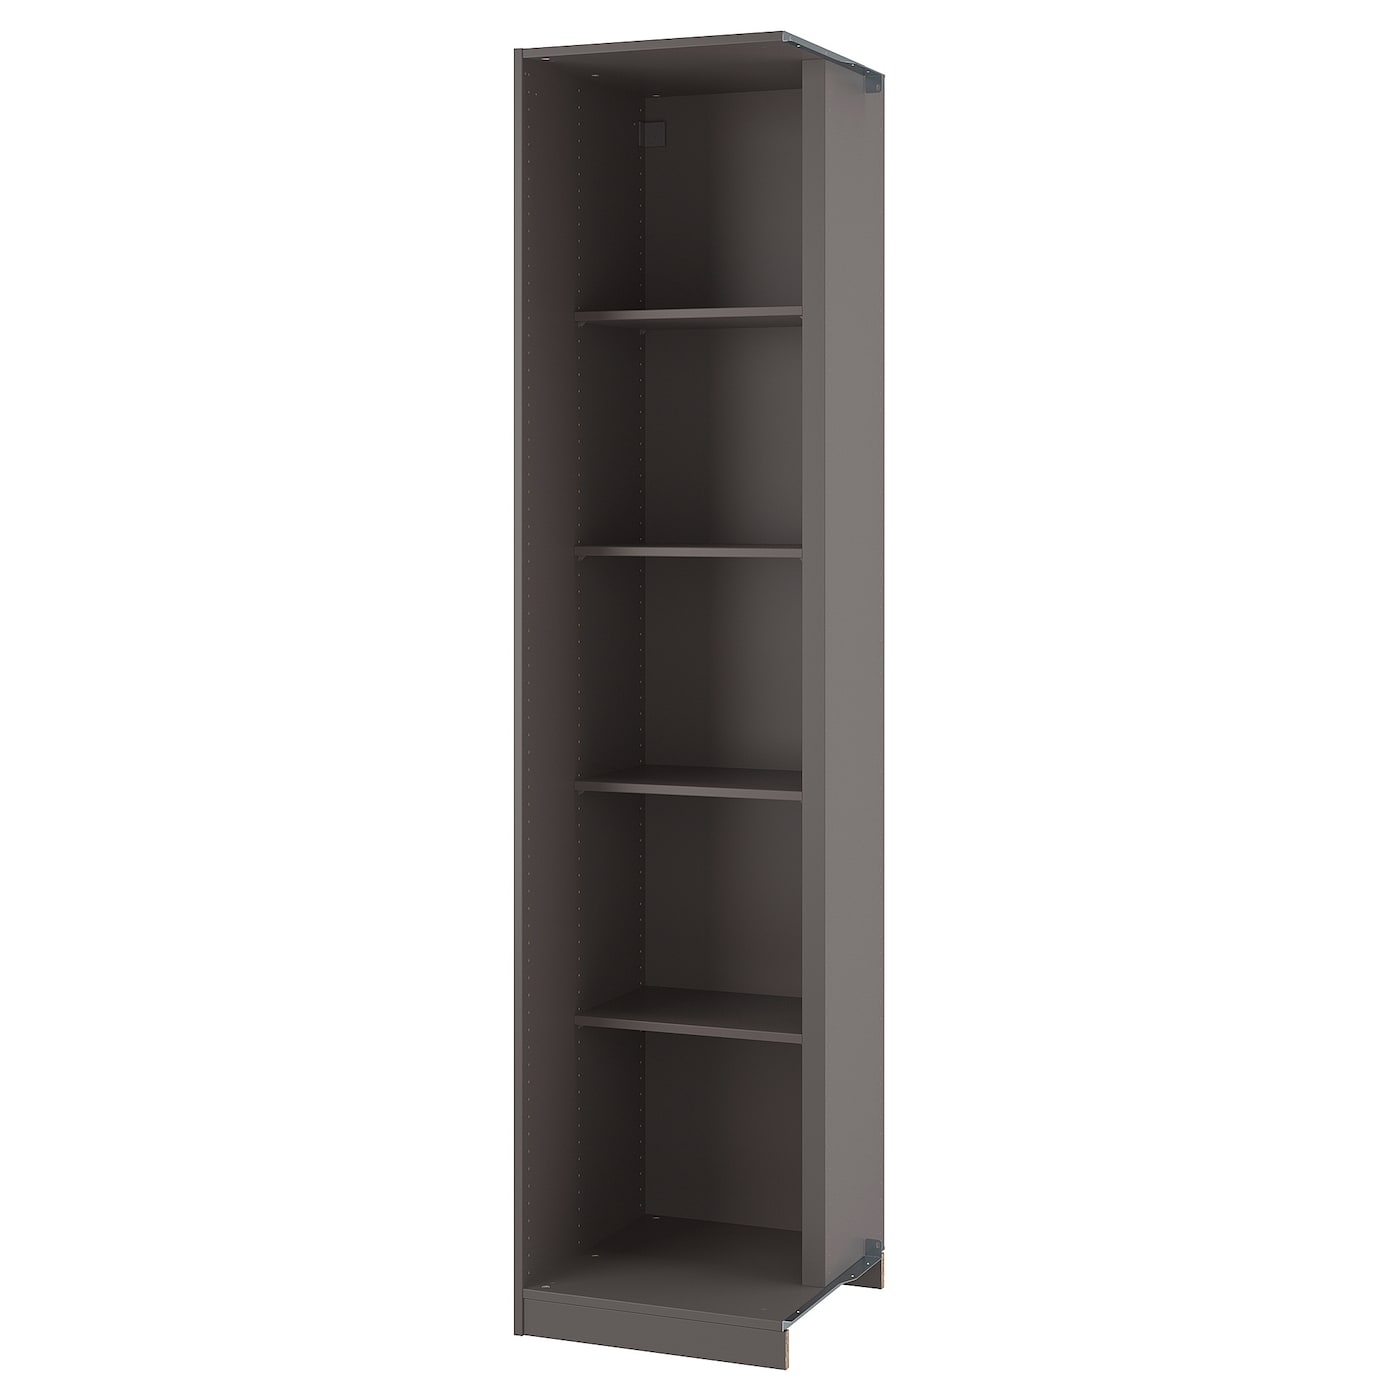 Дополнительный угловой шкаф с 4 полками - PAX  IKEA/ ПАКС ИКЕА,53x58x236 см, коричневый